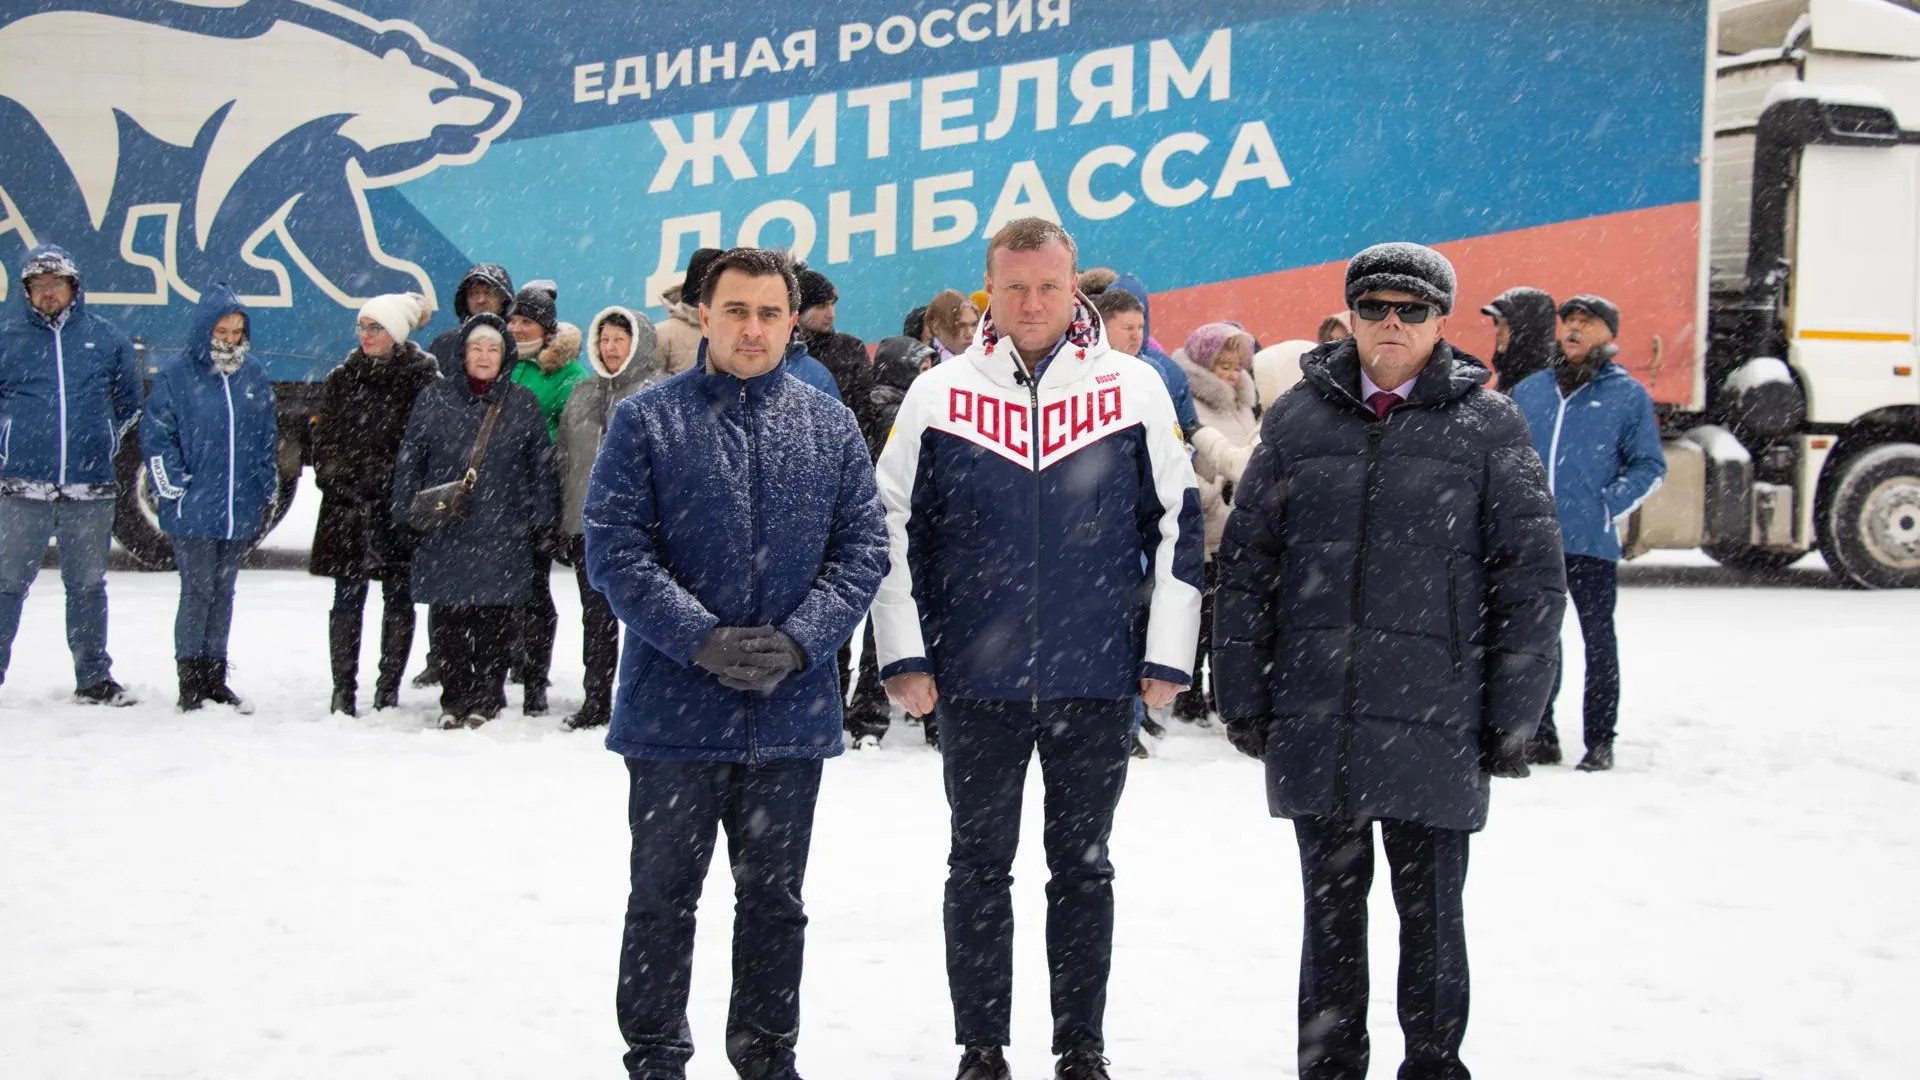 «Единая Россия» отправила помощь жителям Донбасса